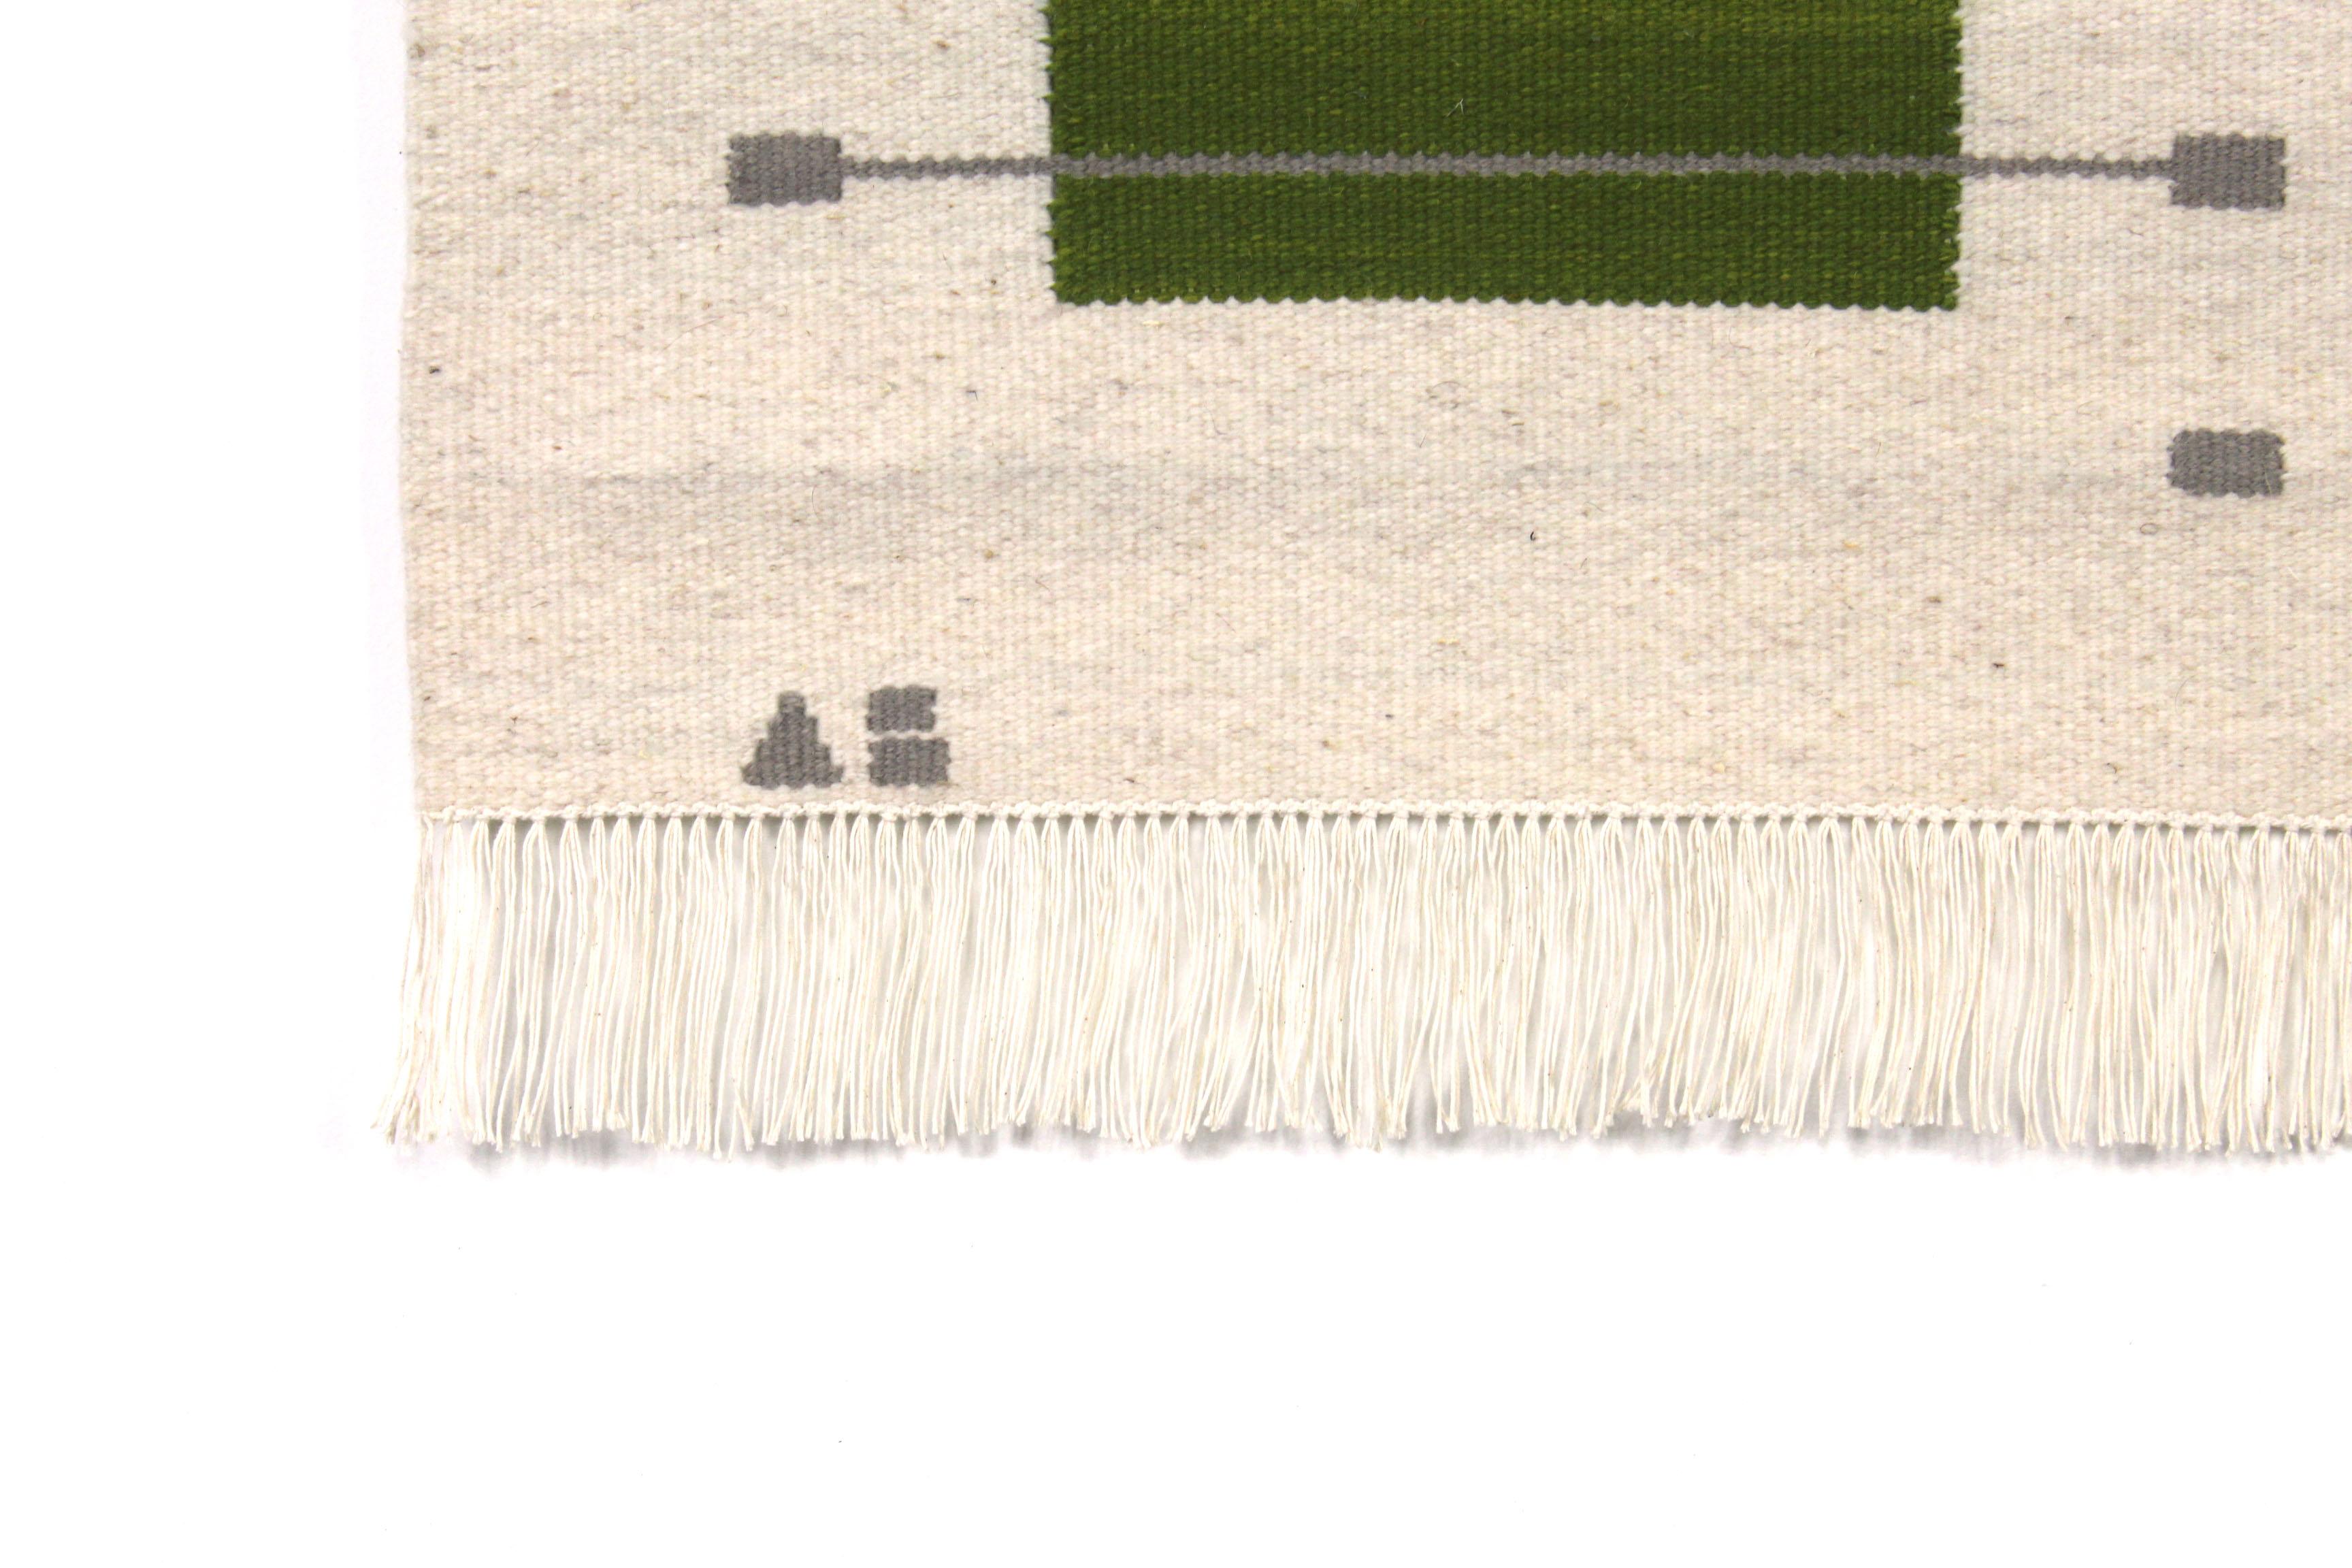 Questo appendiabiti da parete è un cimelio unico nel suo genere, ispirato a Lloyd Wright e agli architetti della Prairie School e agli studi di Joseph Albers sui colori. 

L'intero processo di creazione di questo wall hanging è stato realizzato